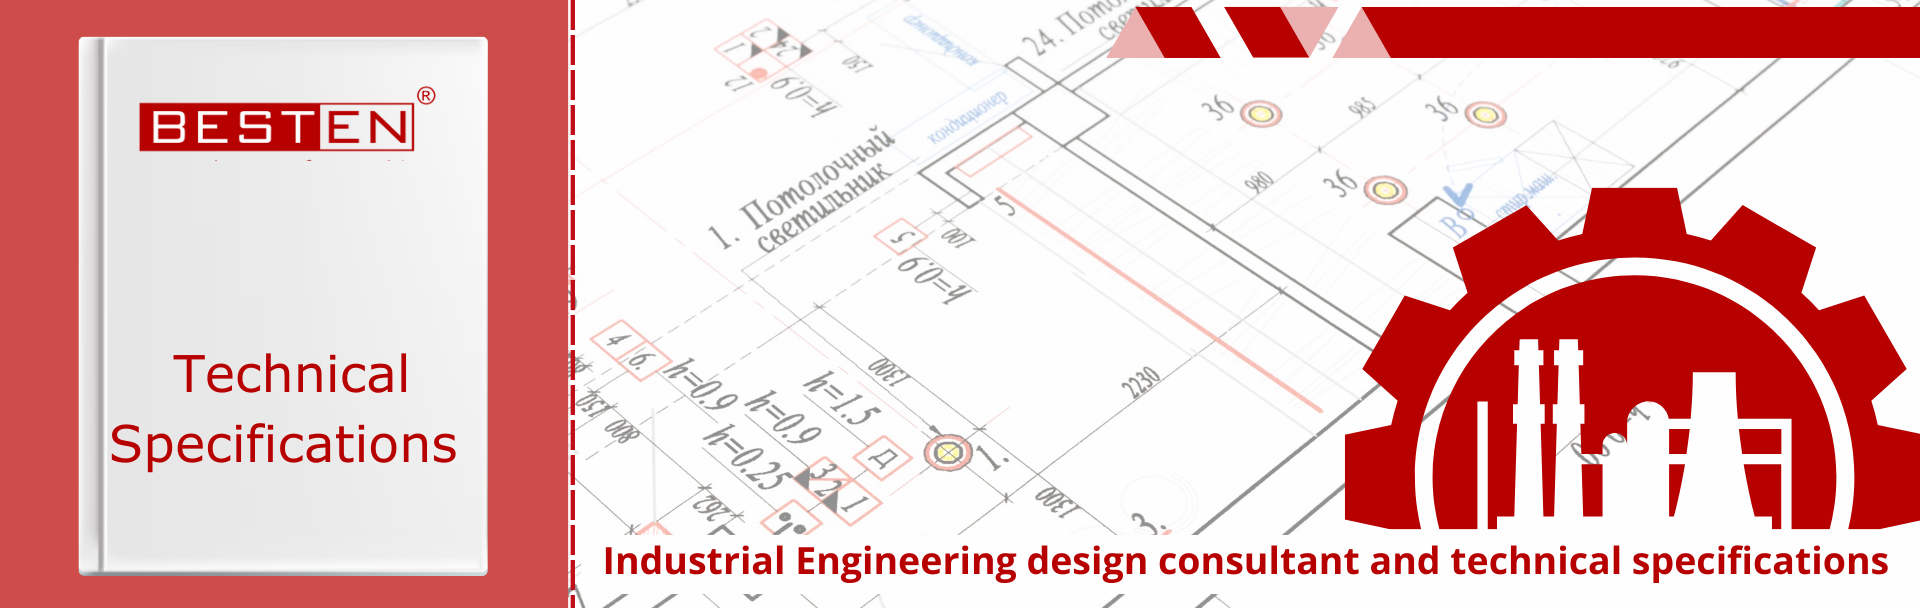 Industrial Engineering Design Consultant